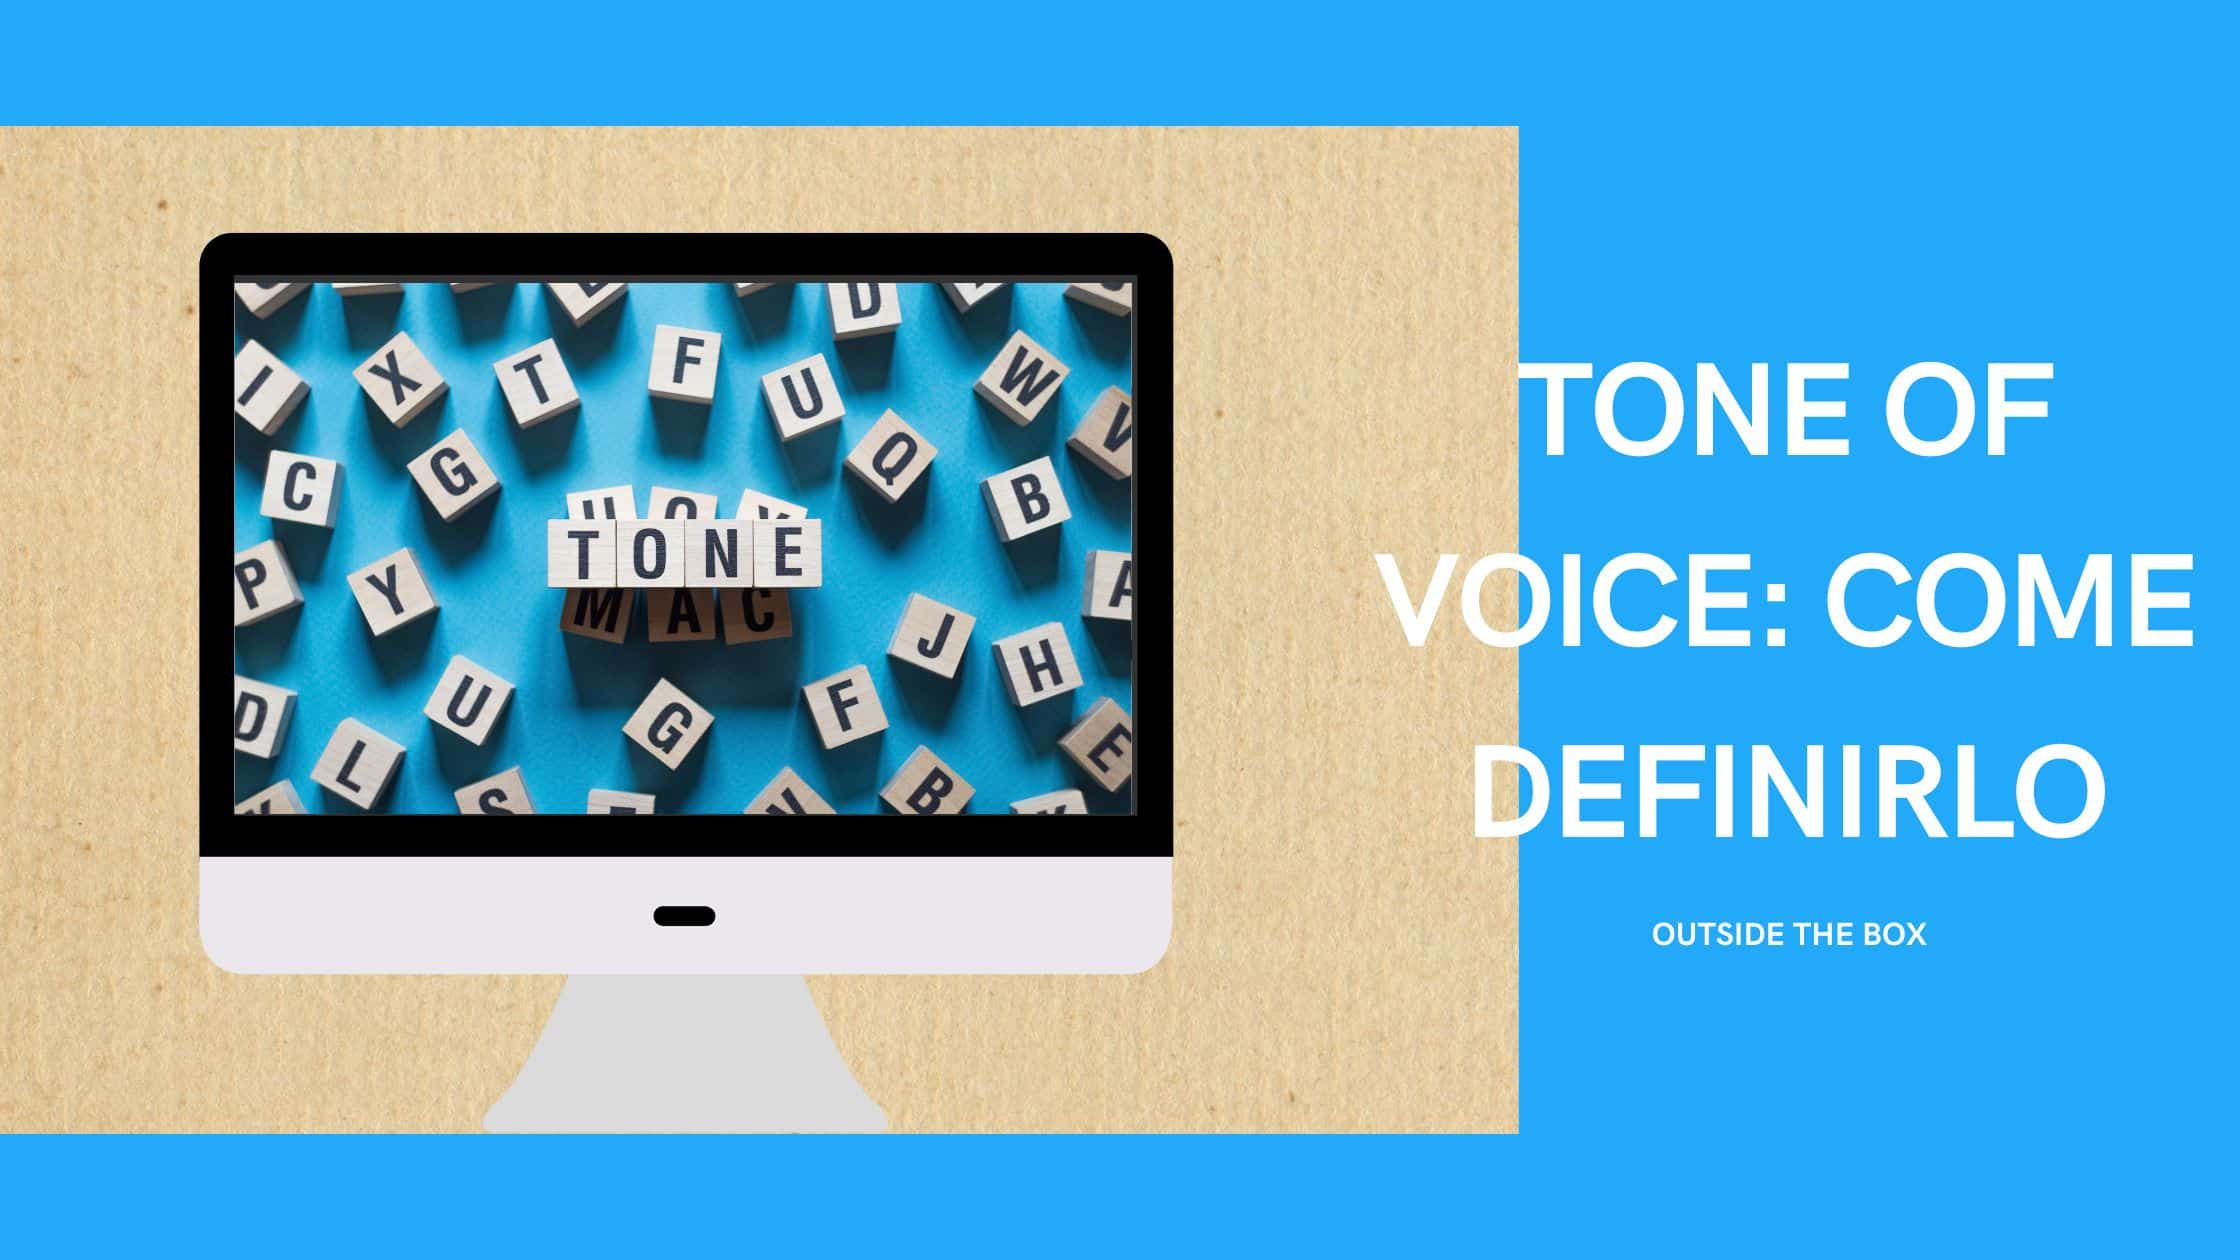 Il Tone of voice del tuo brand: come definirlo in 3 step